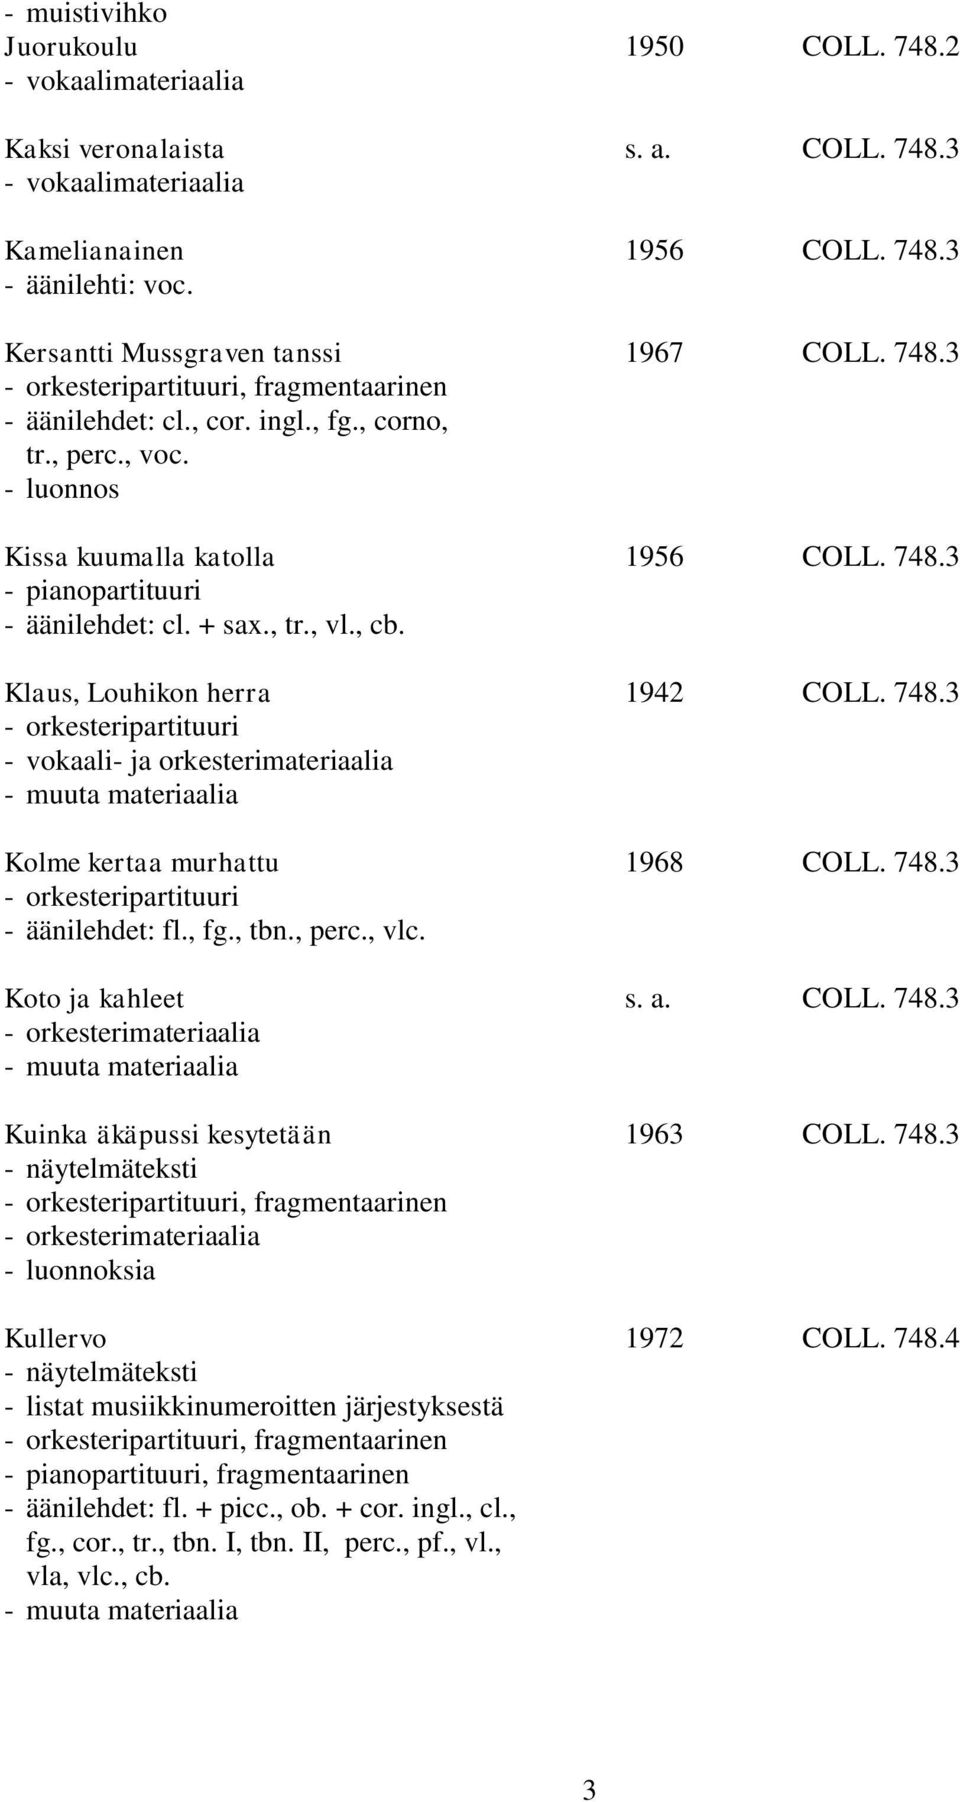 748.3 - äänilehdet: fl., fg., tbn., perc., vlc. Koto ja kahleet s. a. COLL. 748.3 Kuinka äkäpussi kesytetään 1963 COLL. 748.3 - näytelmäteksti, fragmentaarinen - luonnoksia Kullervo 1972 COLL. 748.4 - näytelmäteksti - listat musiikkinumeroitten järjestyksestä, fragmentaarinen - äänilehdet: fl.